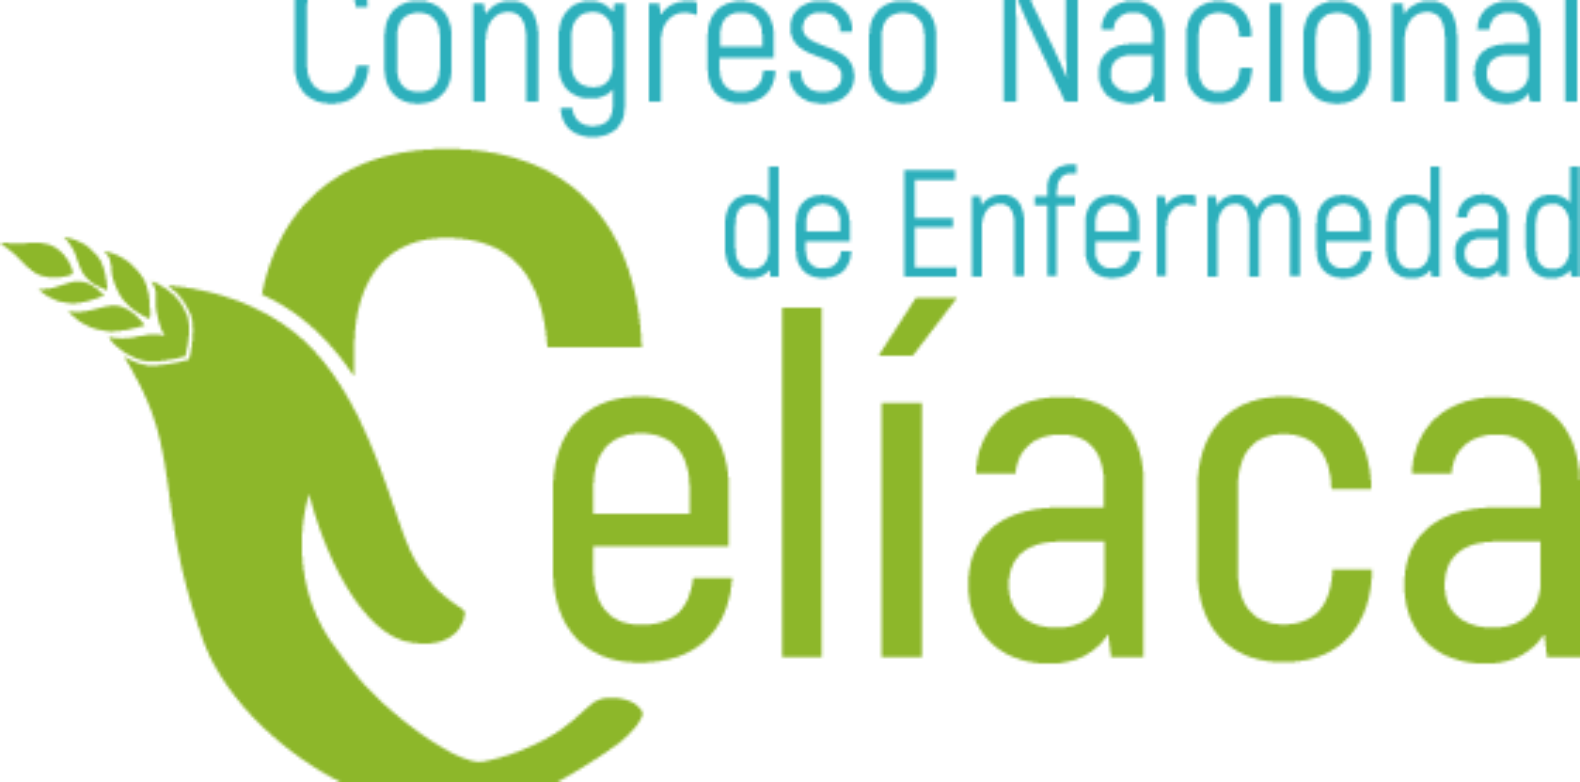 Congreso Nacional de Enfermedad Celiaca